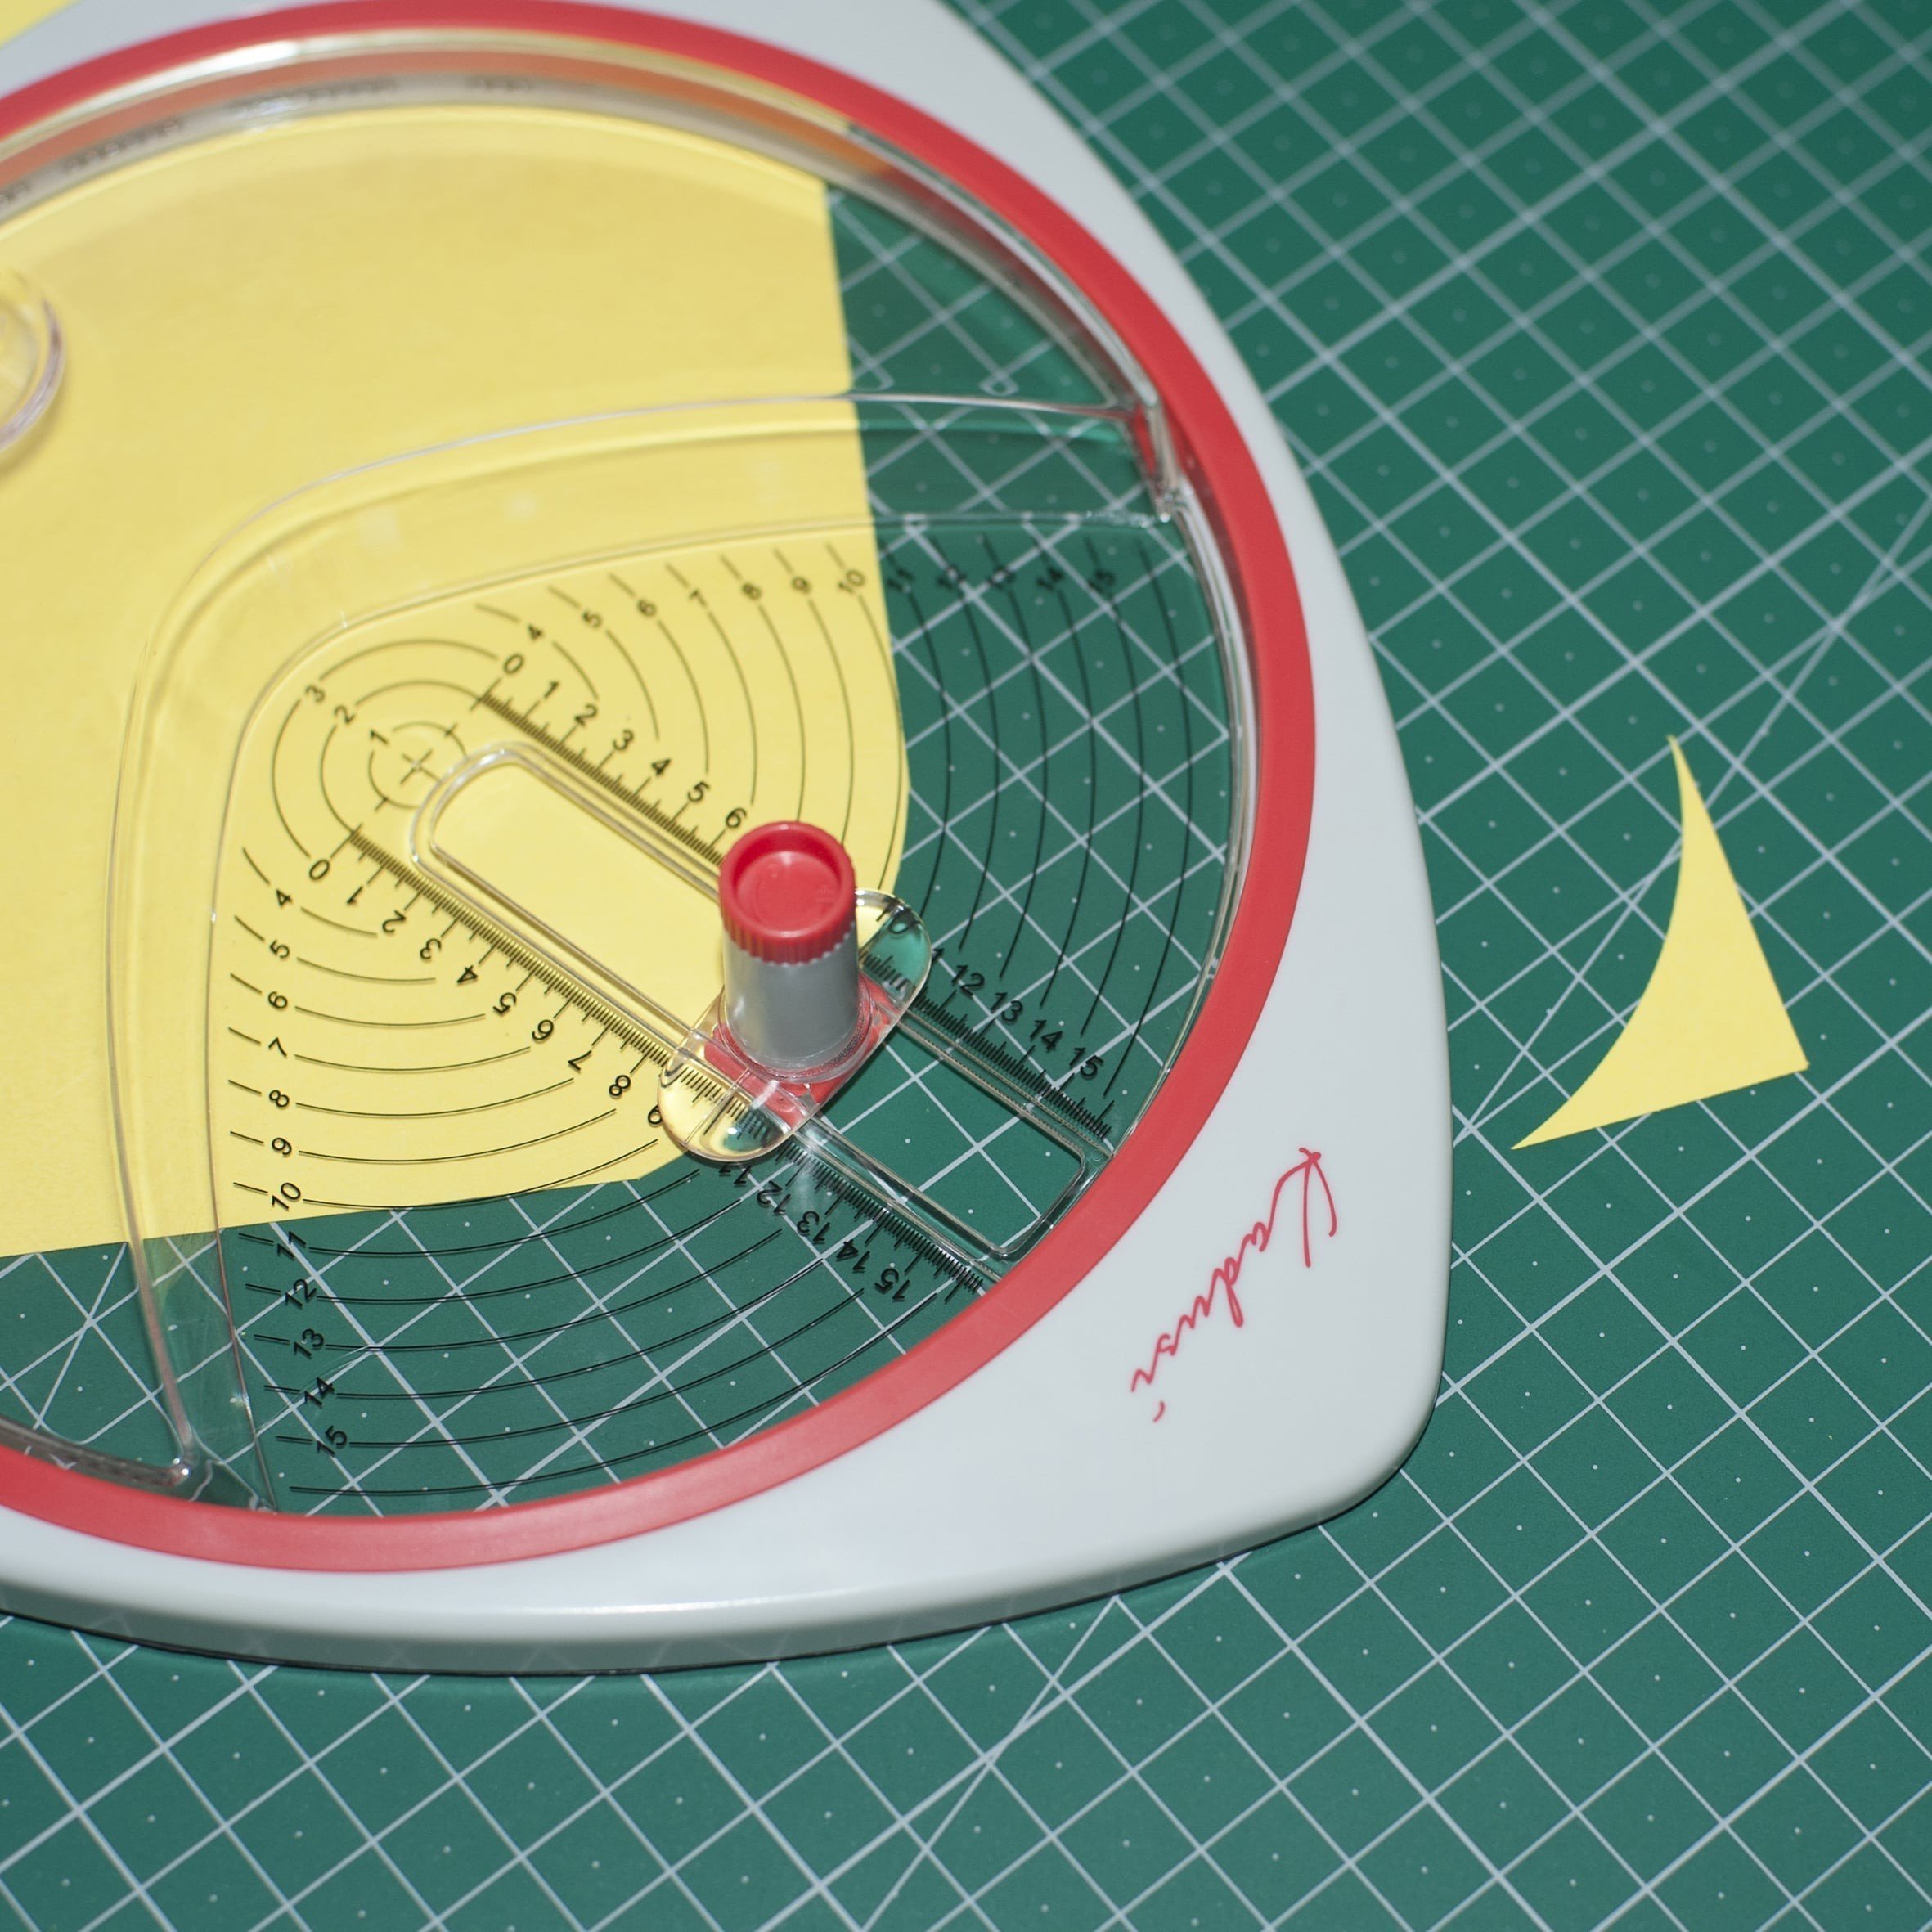 Cutter cortador circular para hacer circulos perfectos